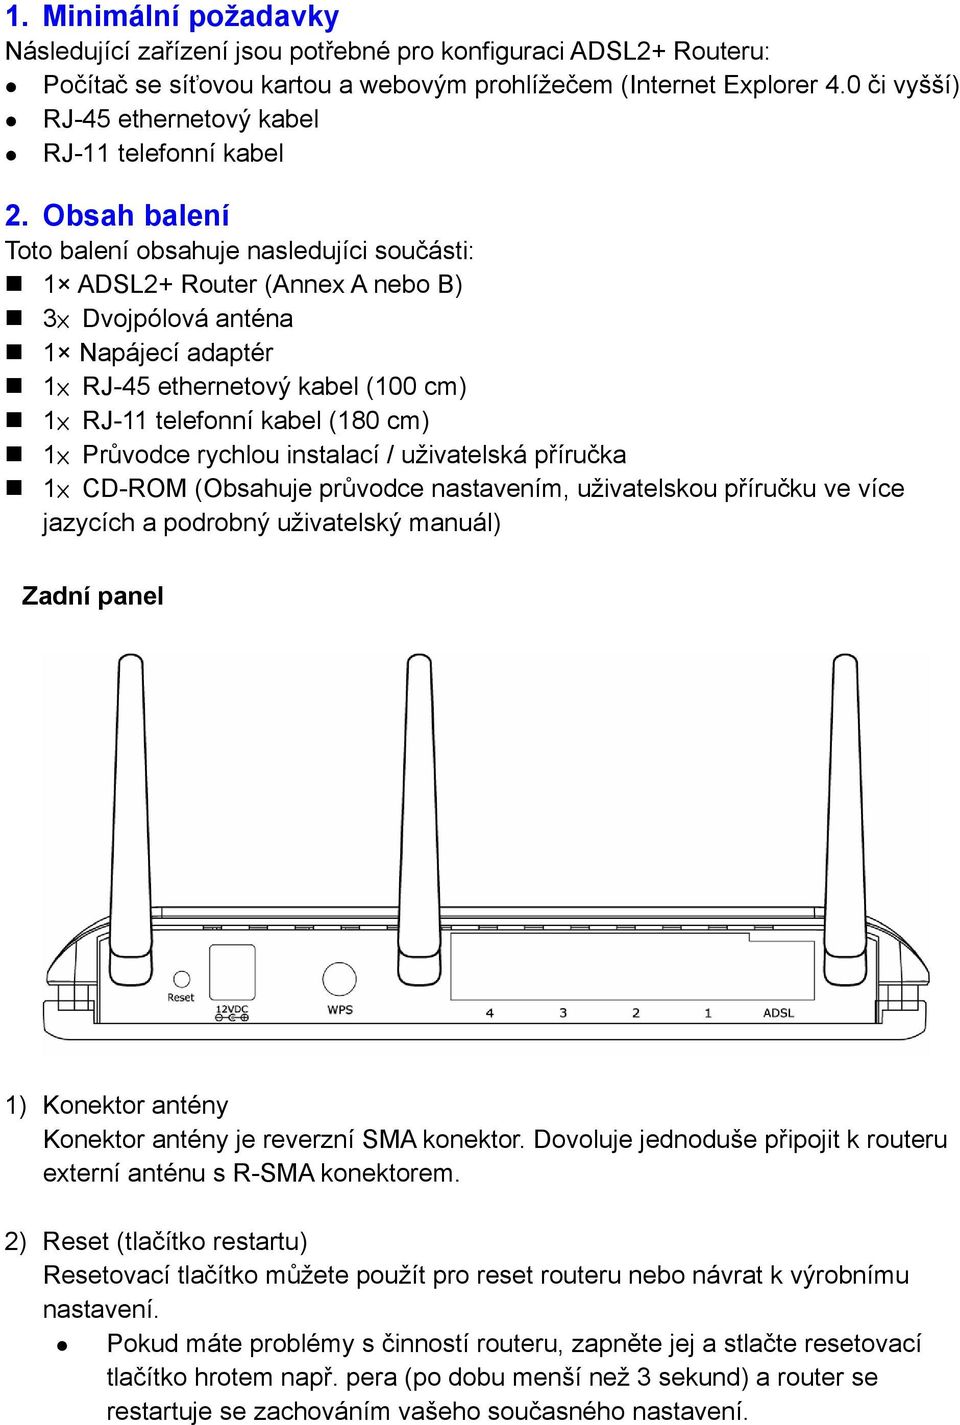 Obsah balení Toto balení obsahuje nasledujíci součásti: 1 ADSL2+ Router (Annex A nebo B) 3 Dvojpólová anténa 1 Napájecí adaptér 1 RJ-45 ethernetový kabel (100 cm) 1 RJ-11 telefonní kabel (180 cm) 1